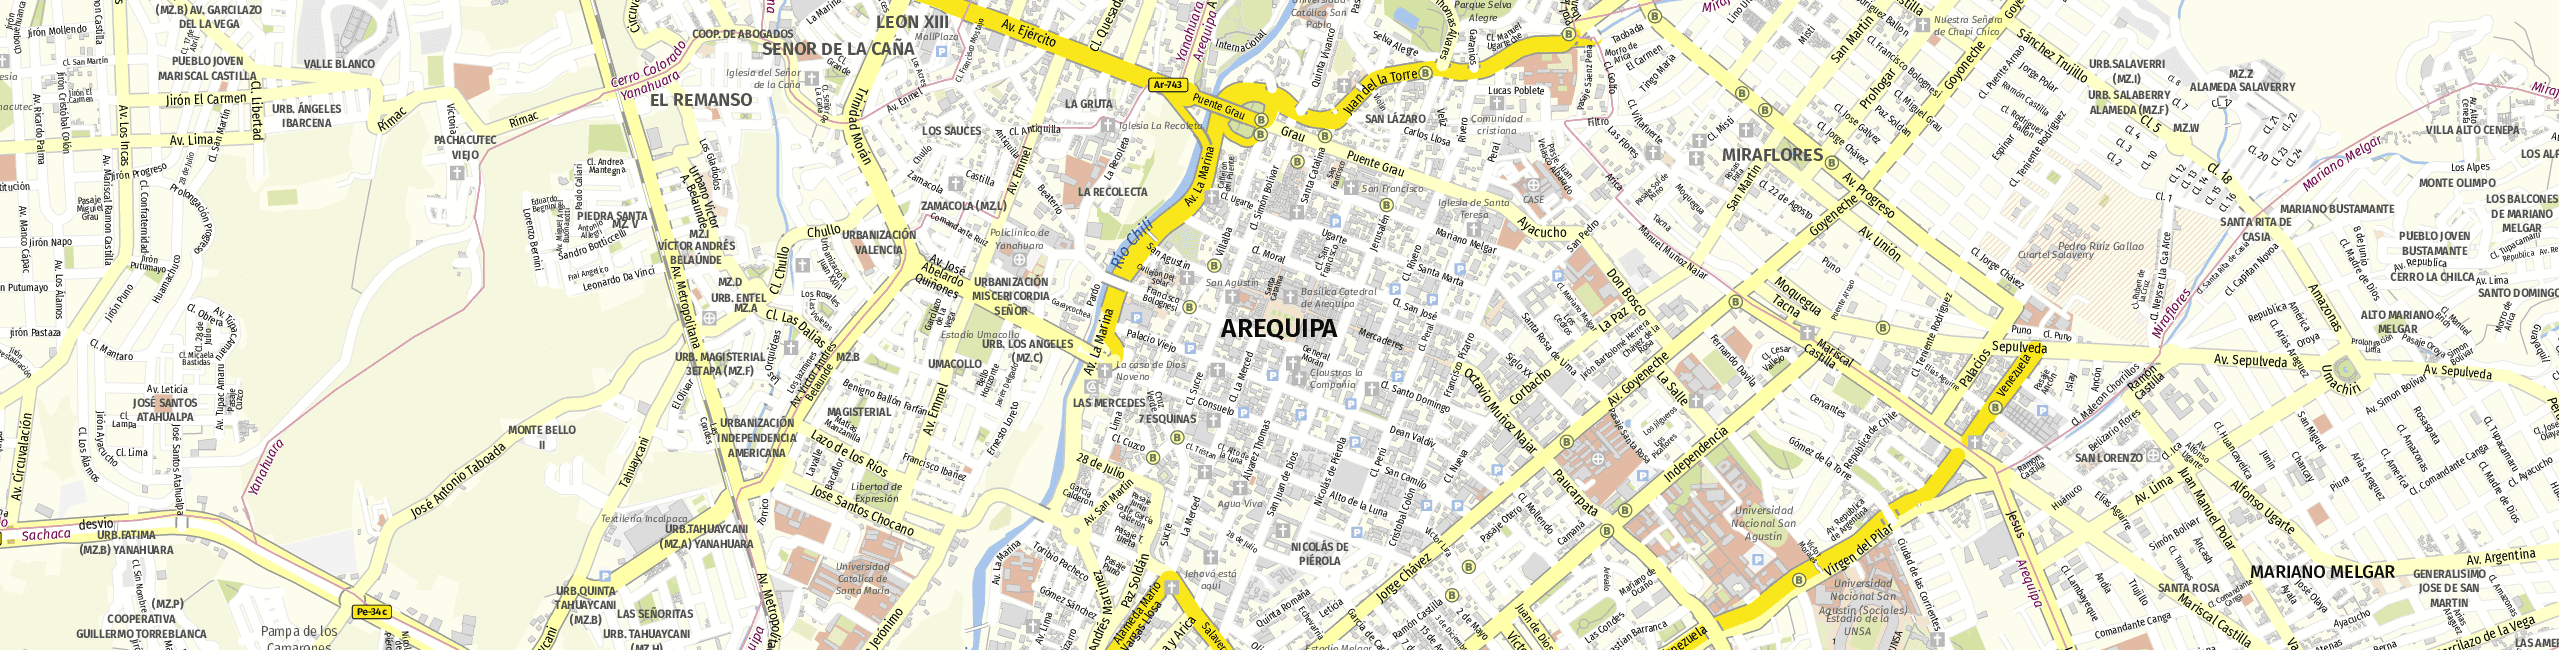 Stadtplan Arequipa zum Downloaden.